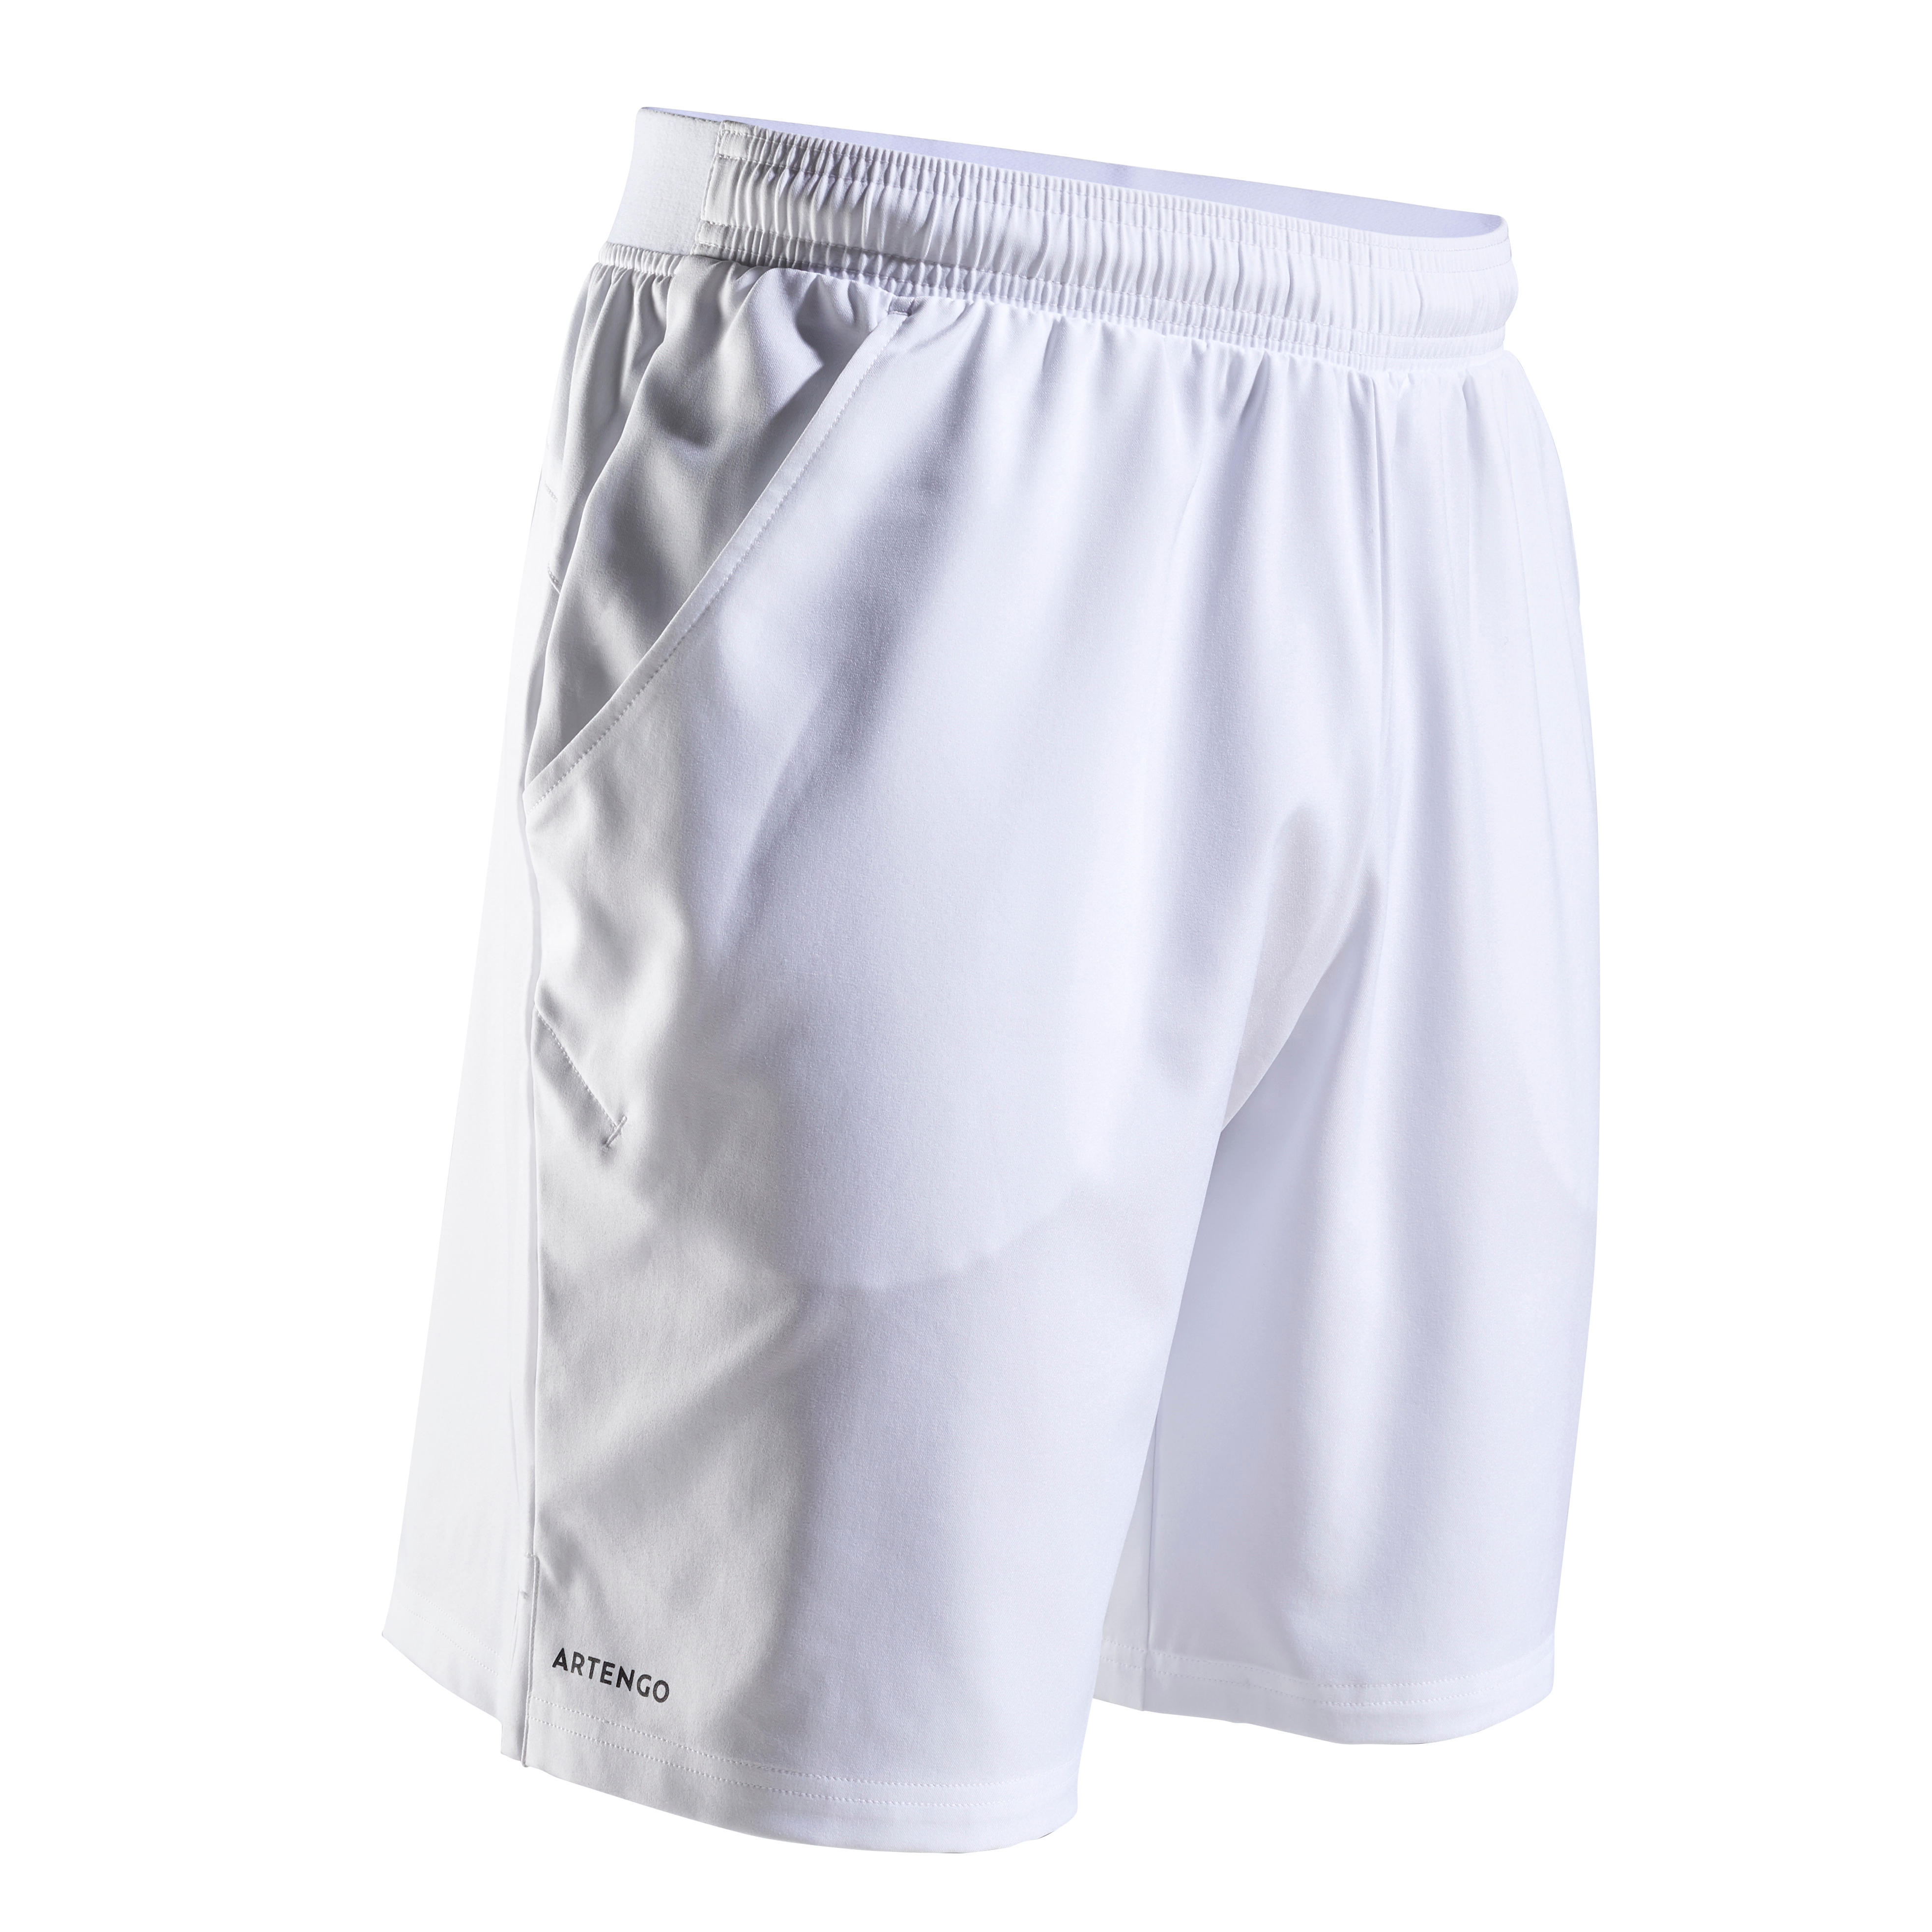 decathlon white shorts